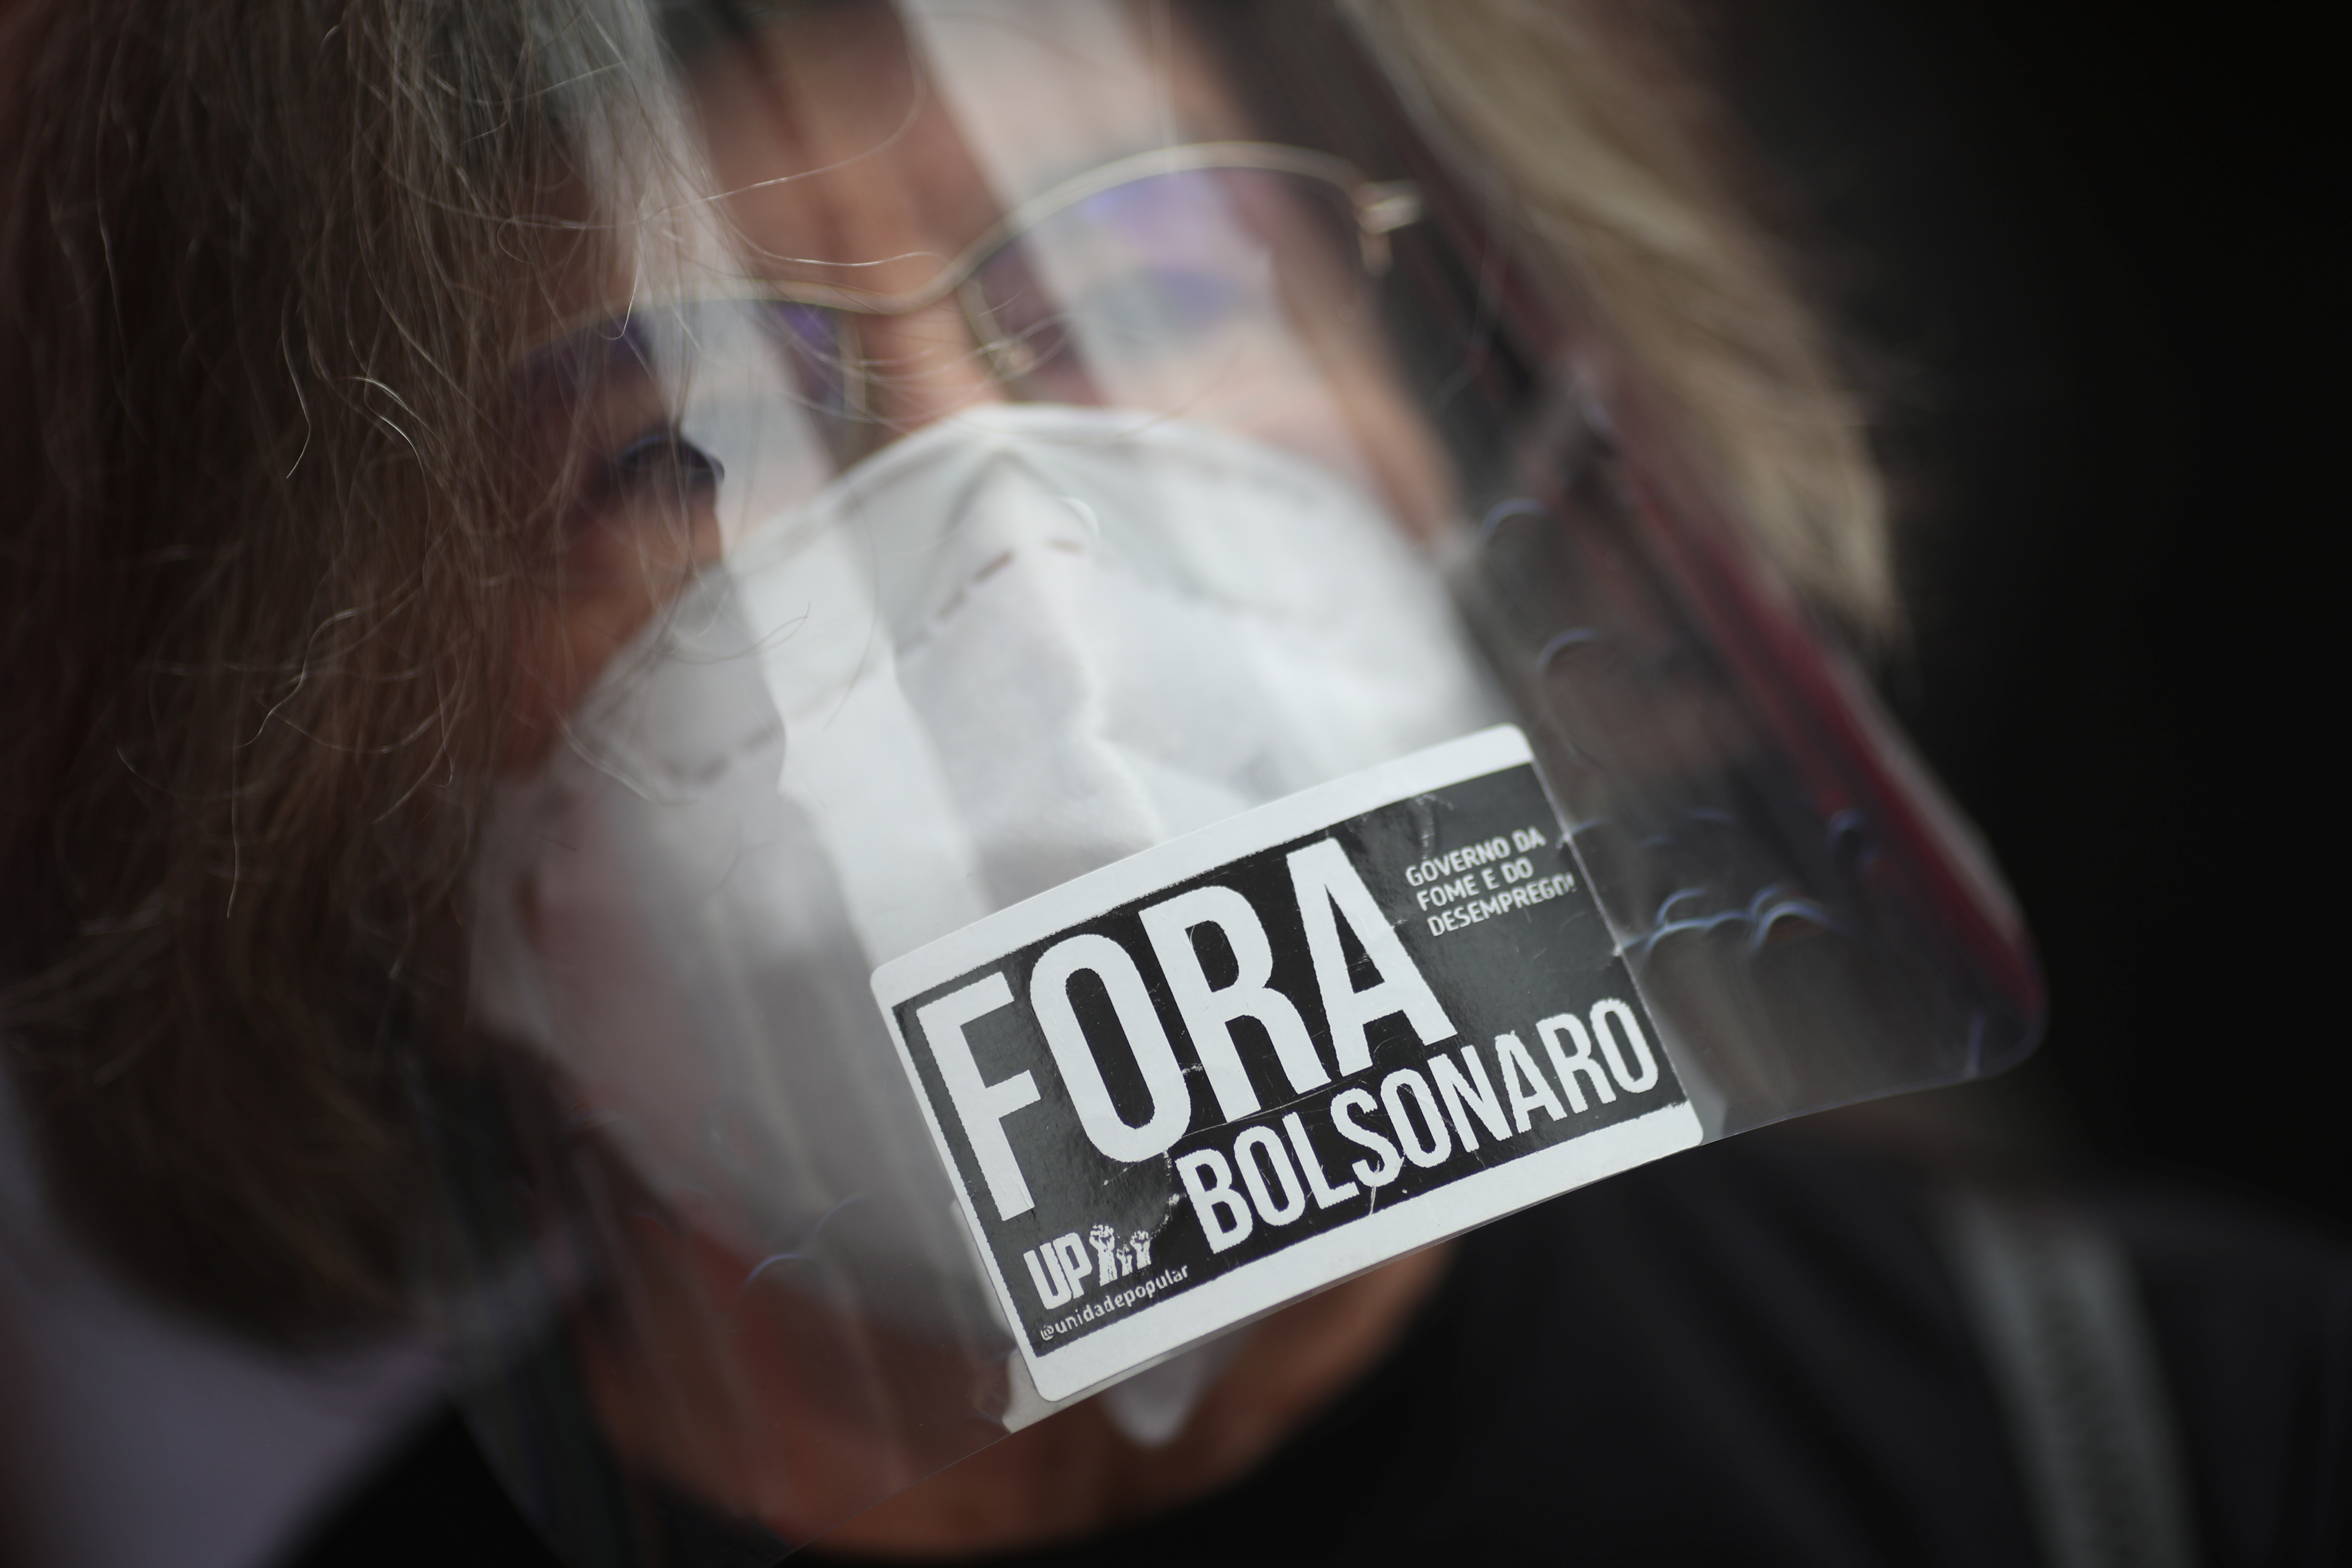 Una mujer pegó un sticker en su máscara protectora en la leyenda "Fuera Bolsonaro"